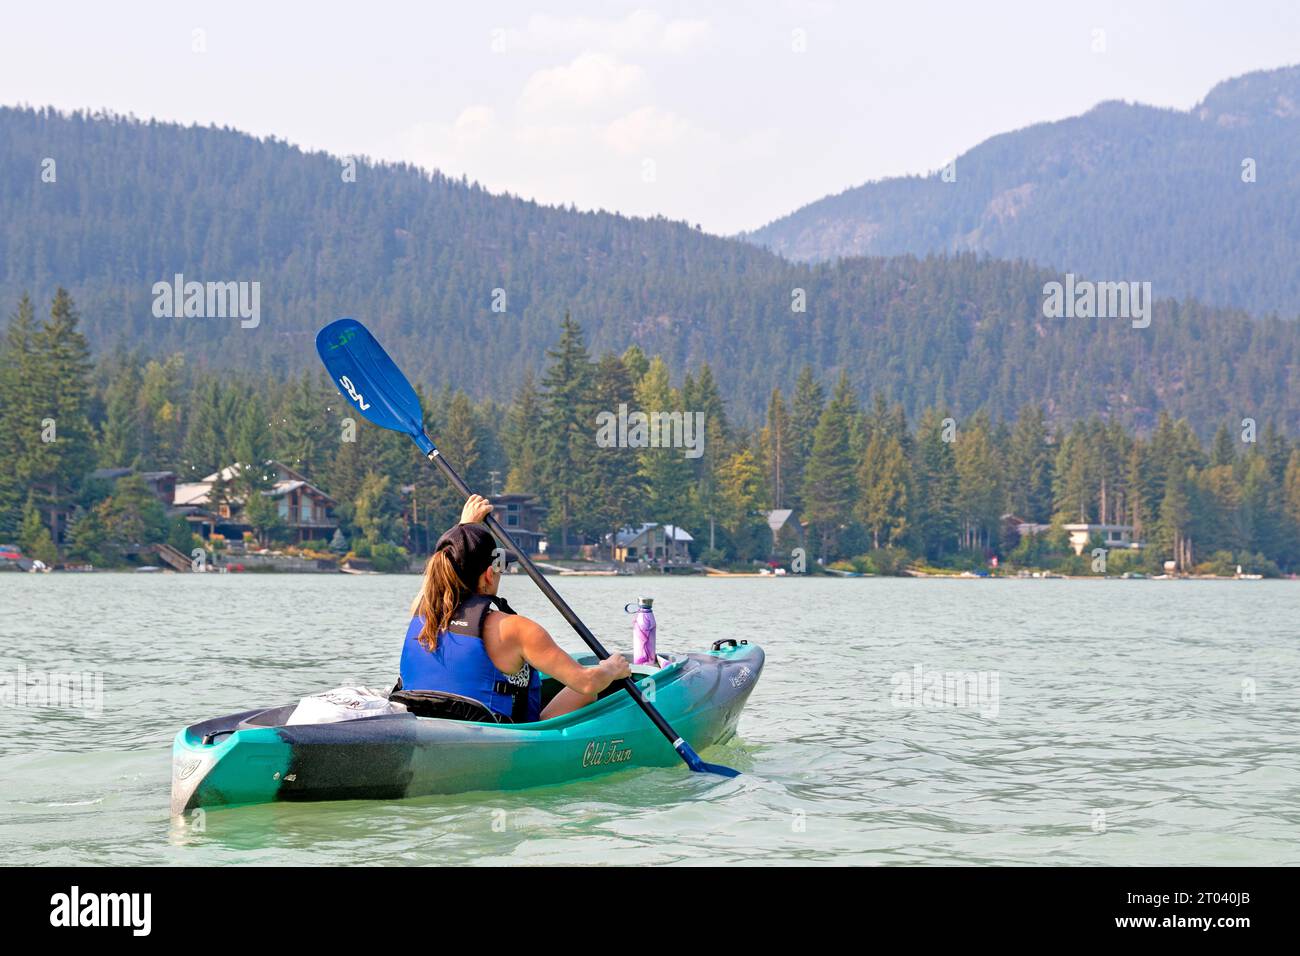 Kayaking on Green Lake, Whistler Stock Photo